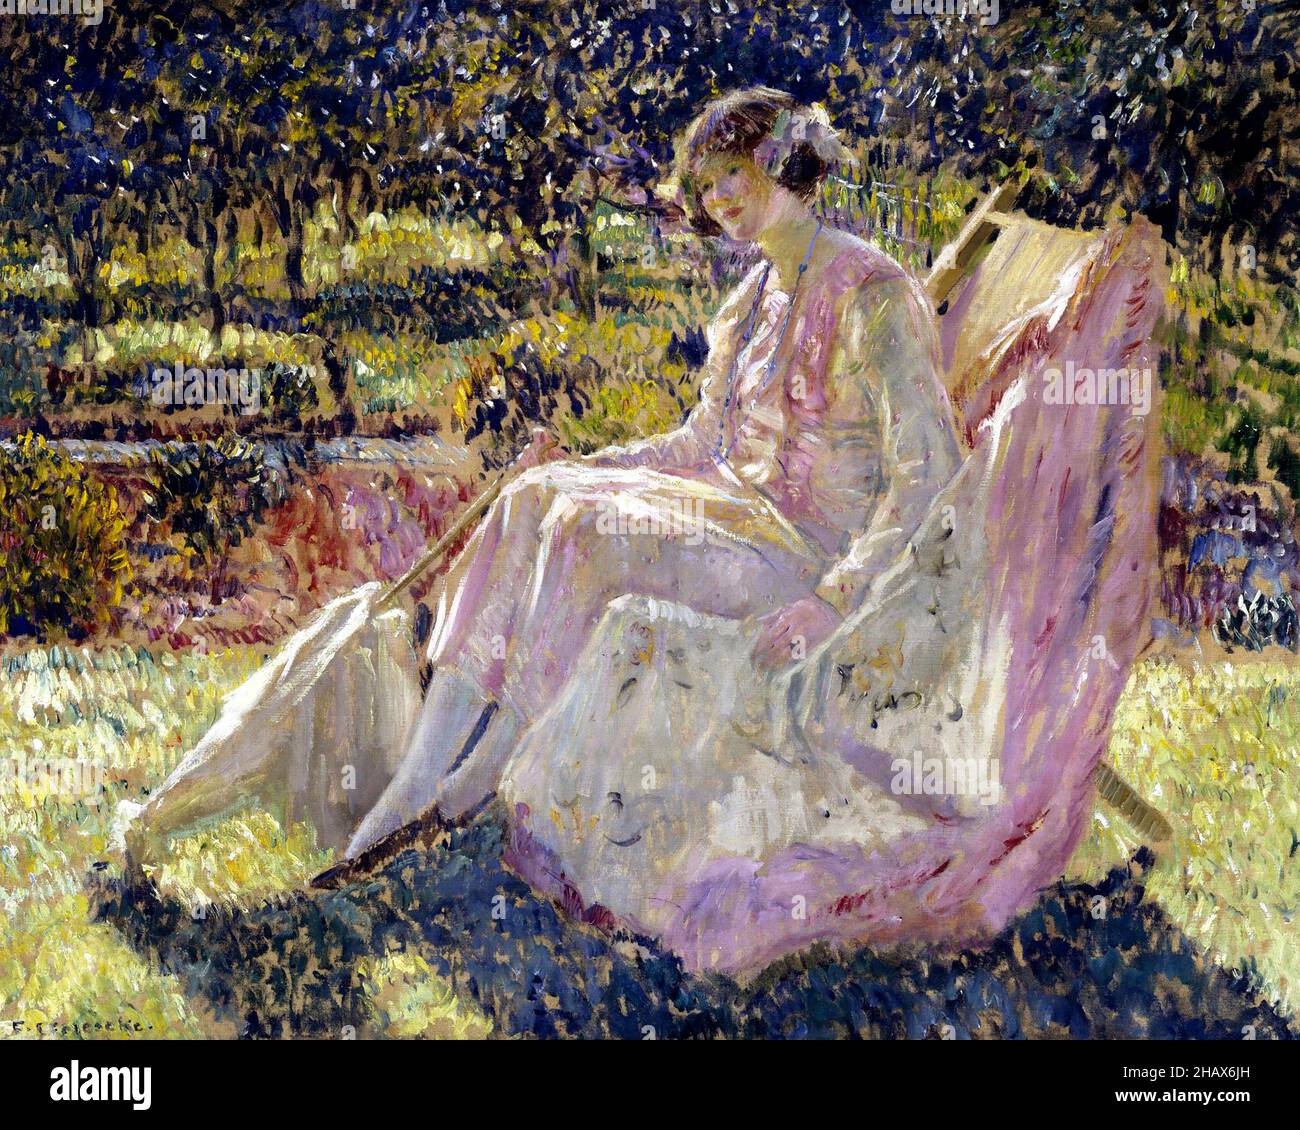 Bain de soleil par Frederick Carl Frieseke (1874-1939), huile sur toile, c.1913 Banque D'Images